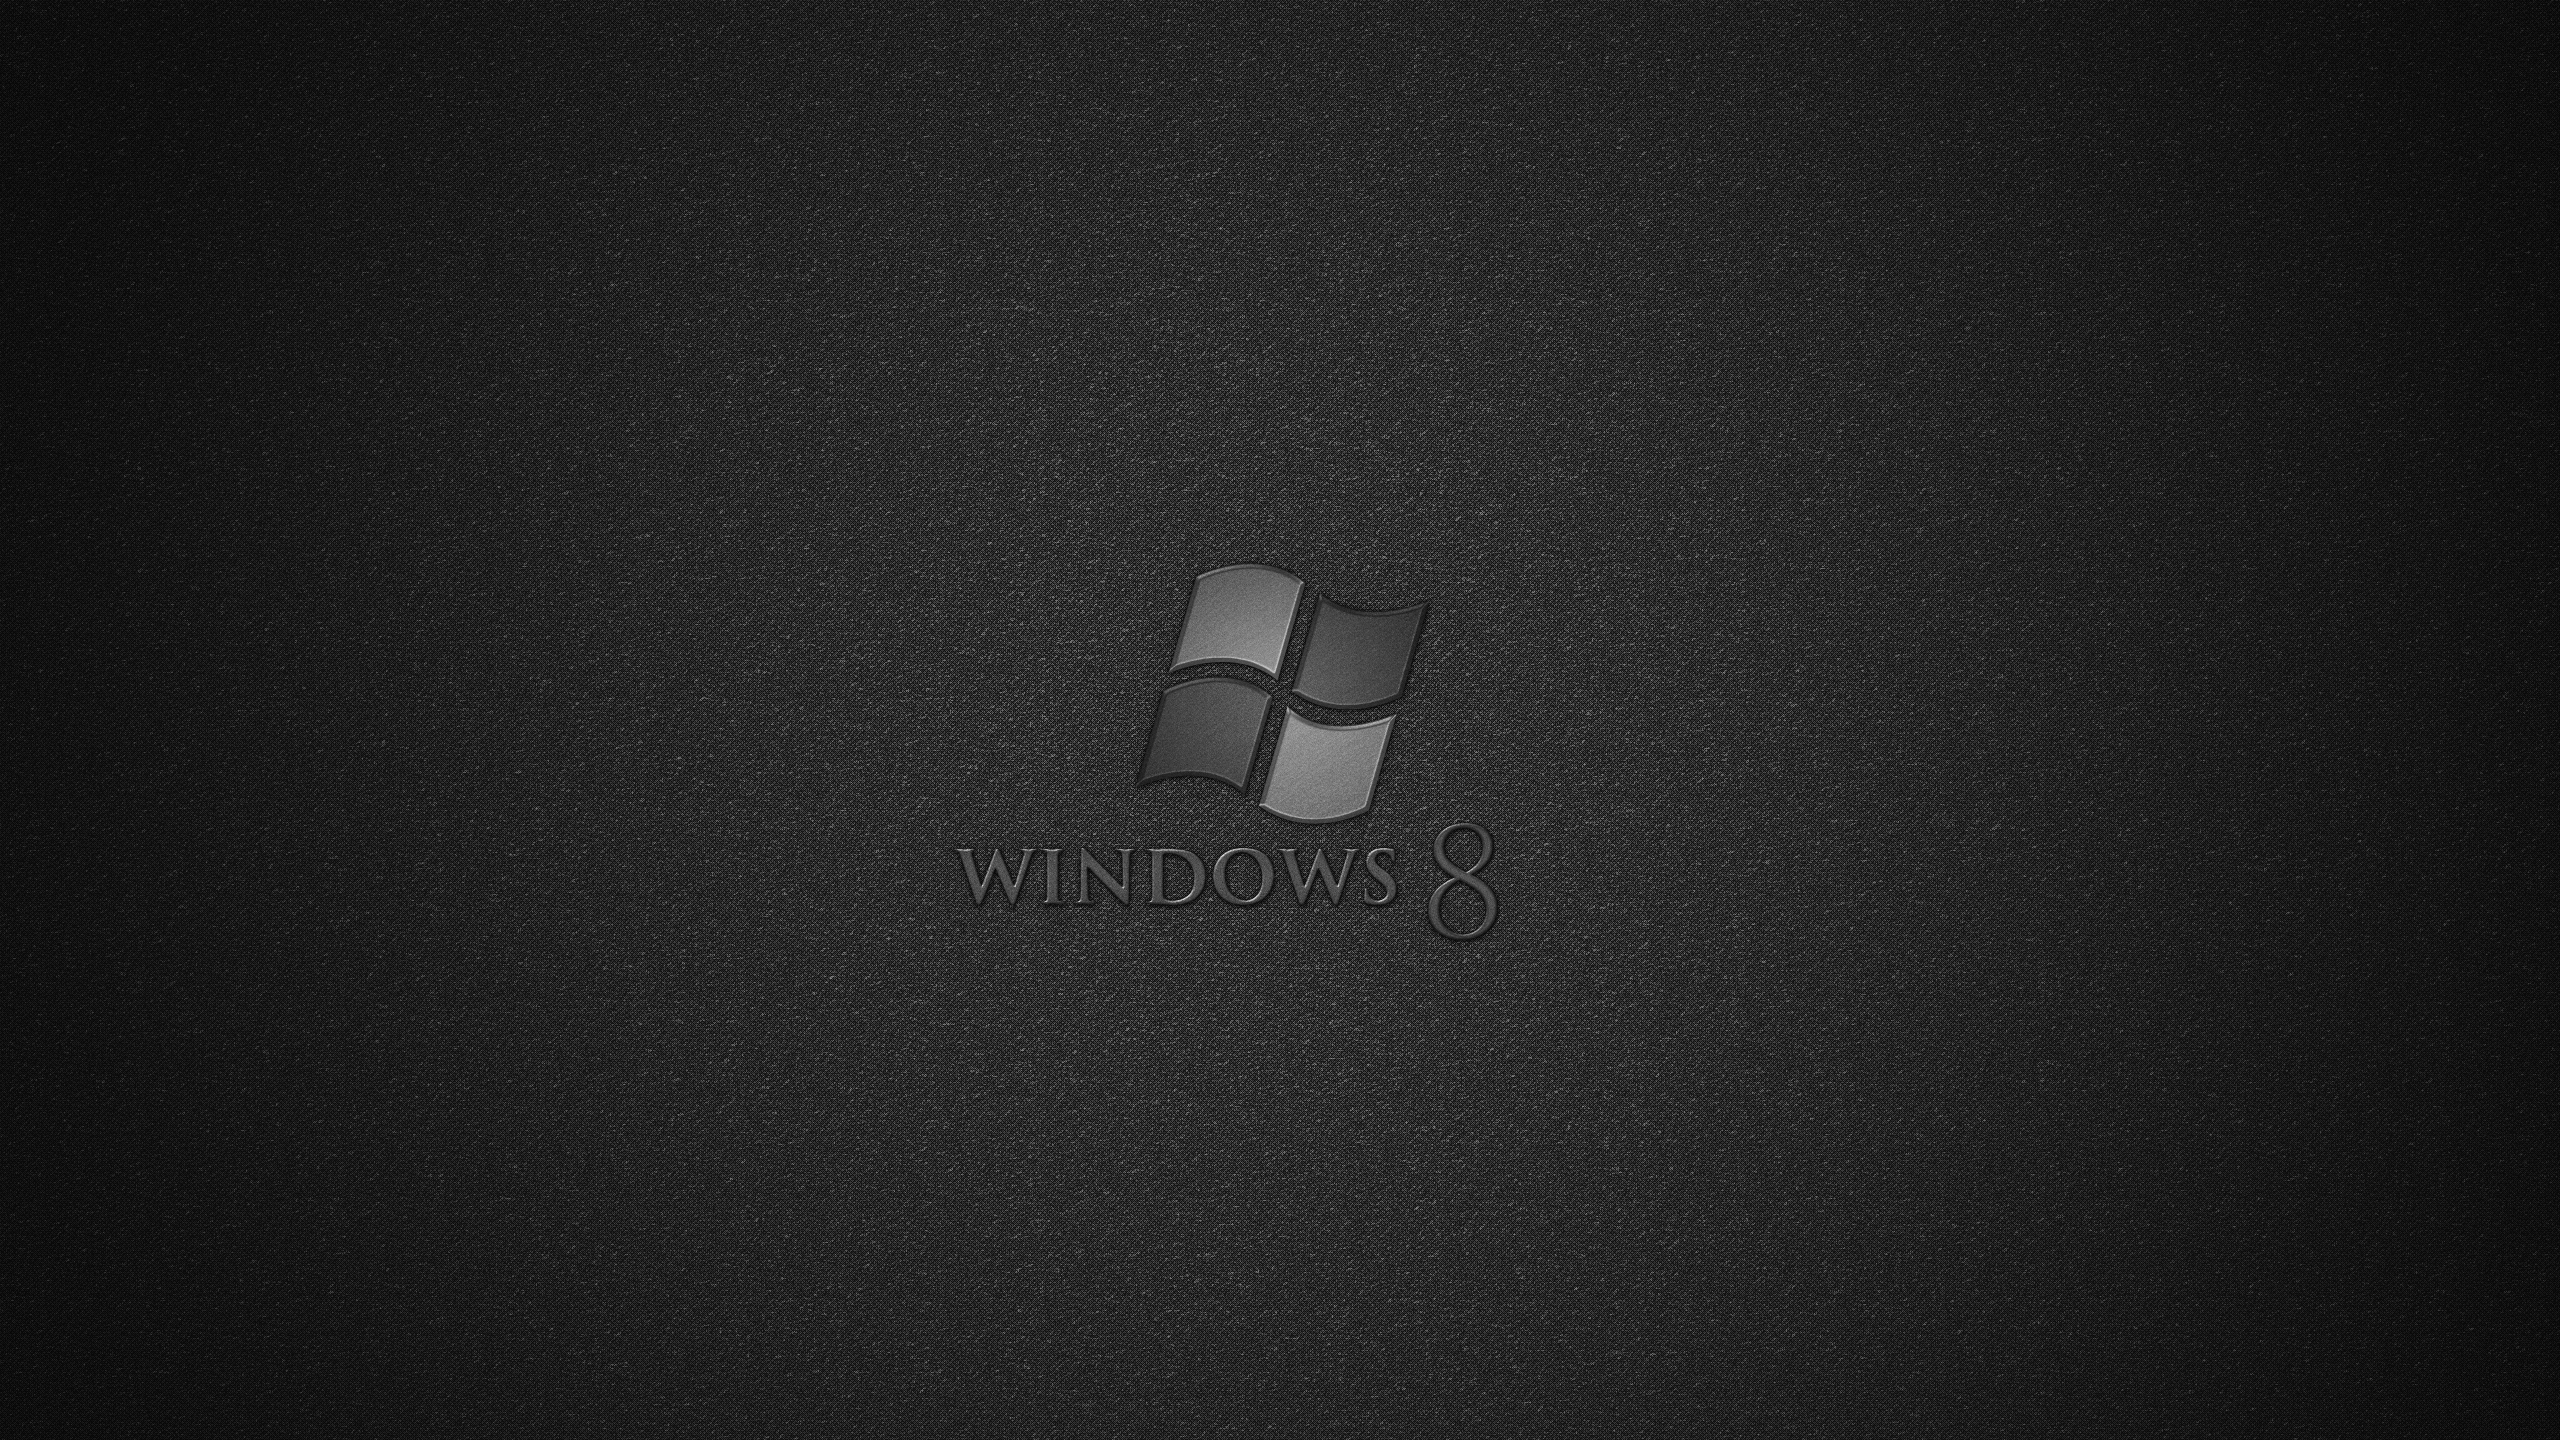 Windows Windows 8 2560x1440